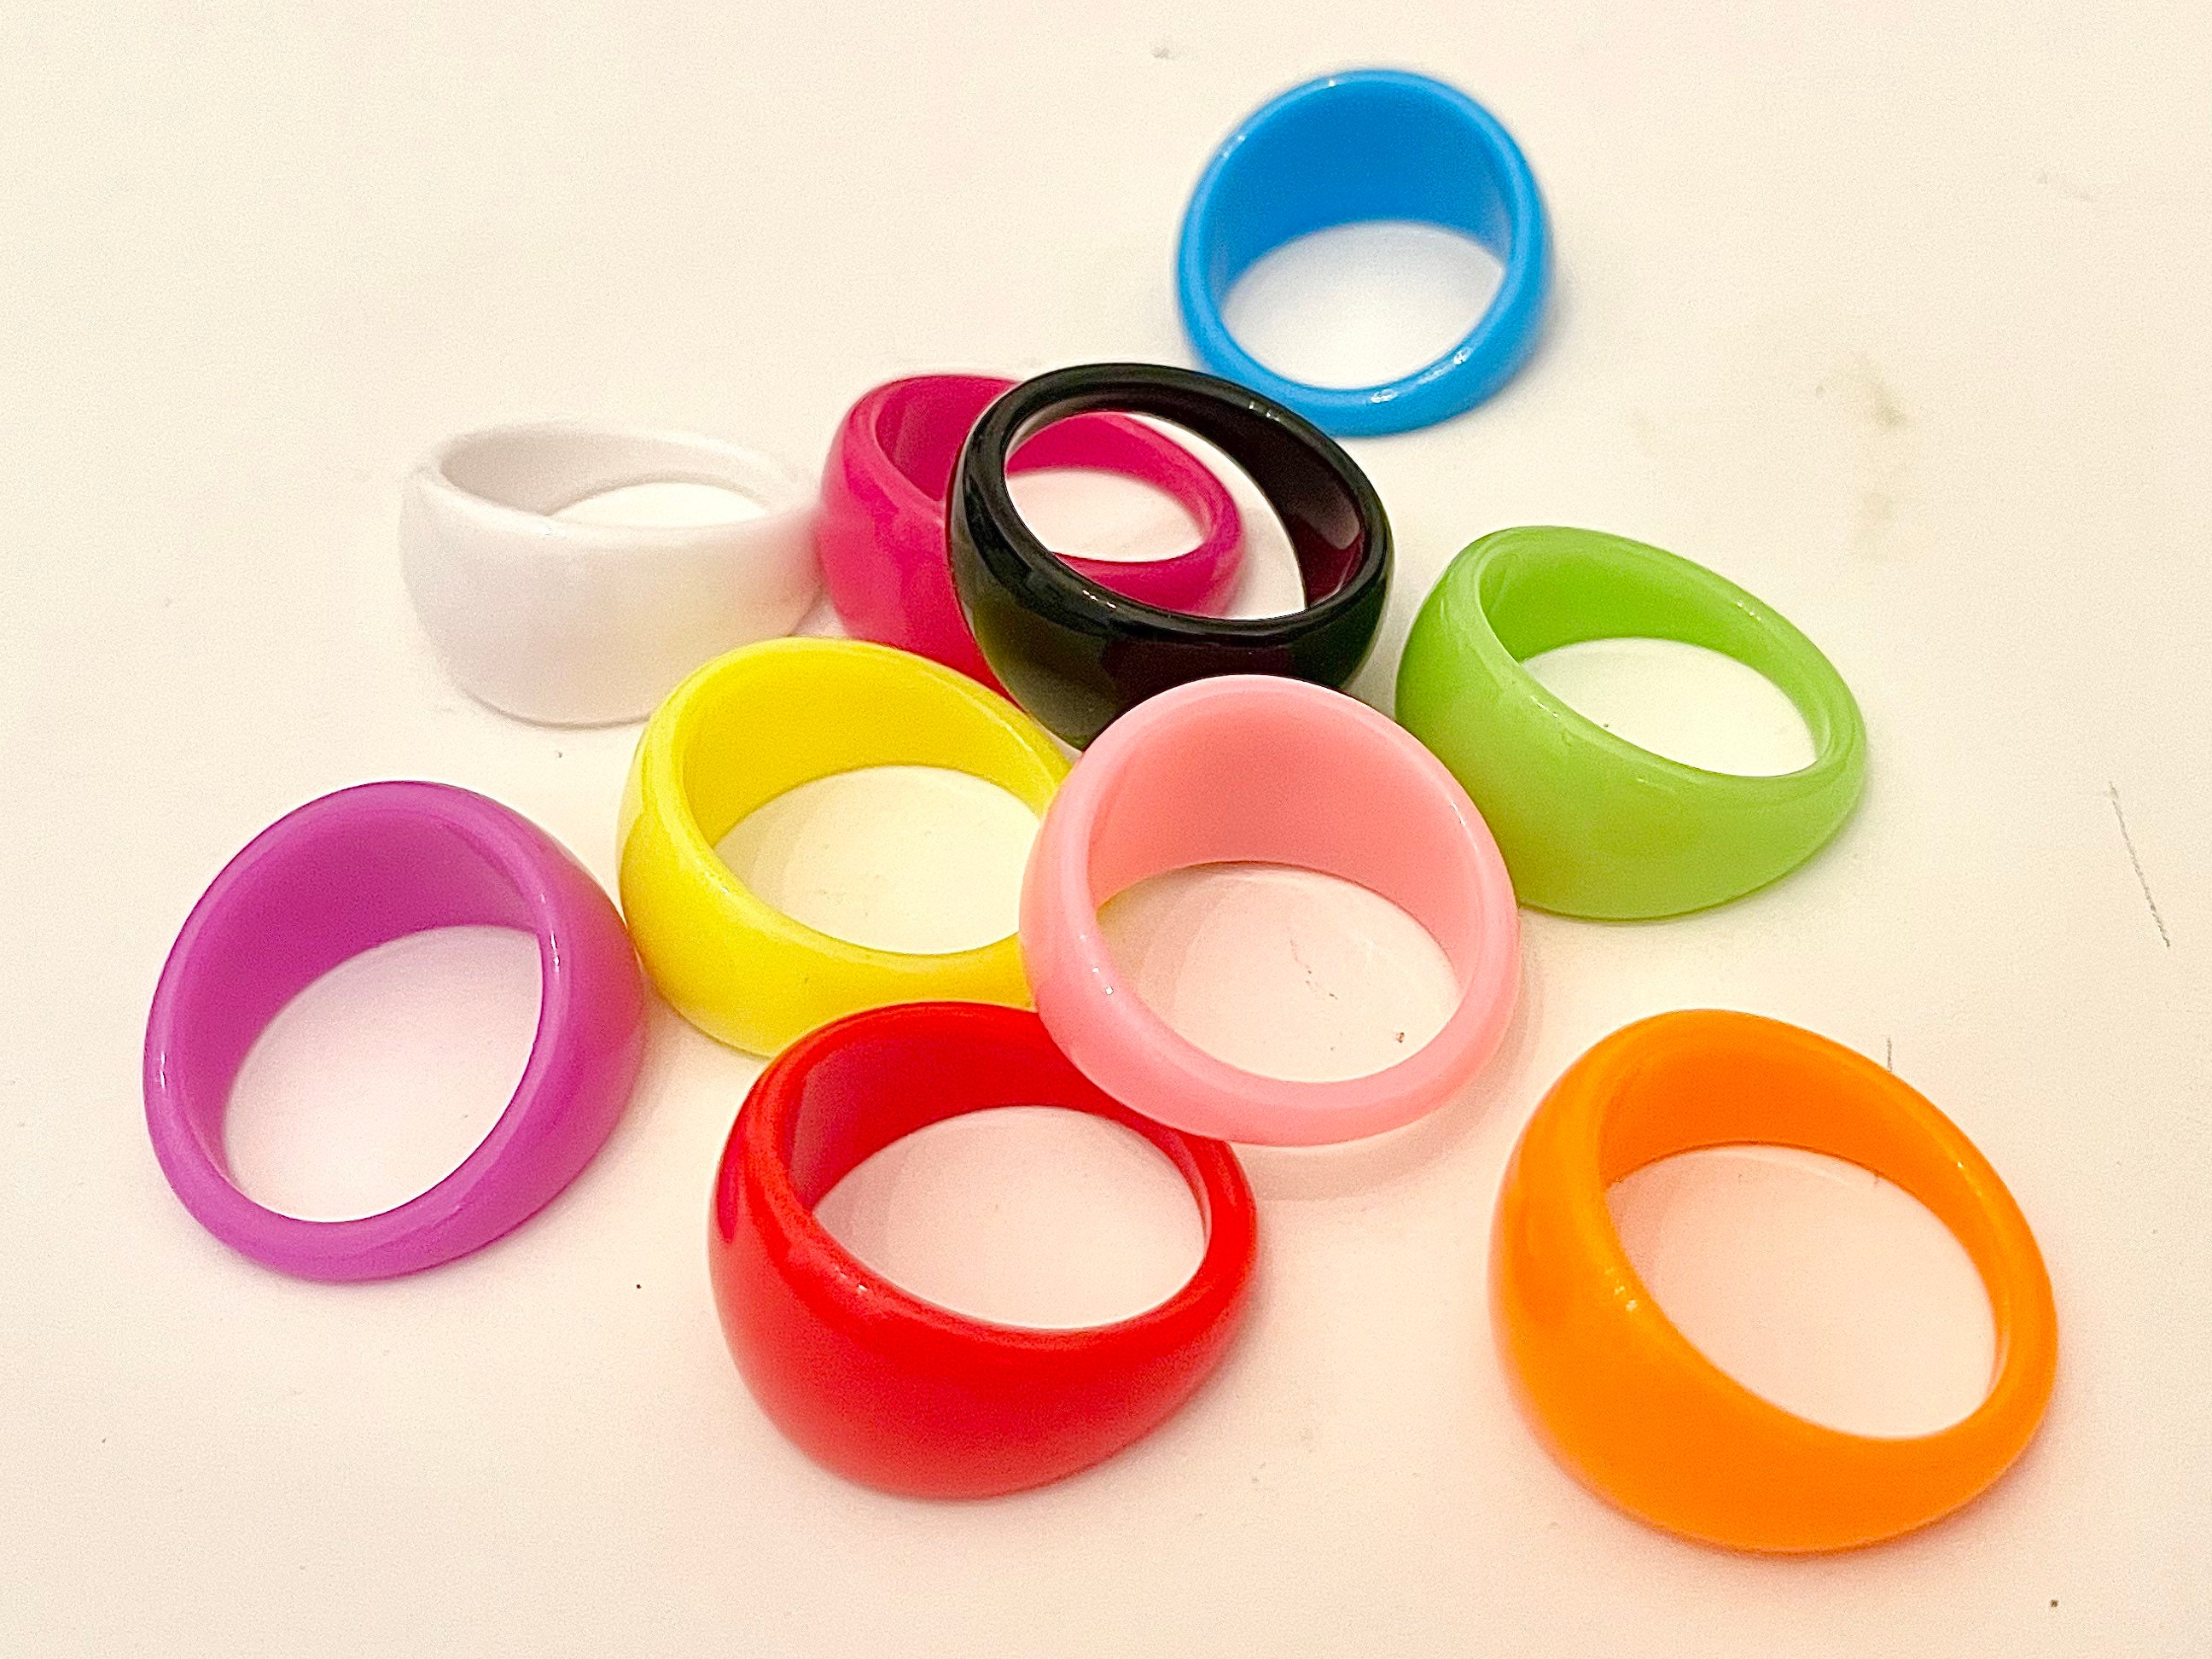 Honbon Plastic Ring Set Price in India - Buy Honbon Plastic Ring Set Online  at Best Prices in India | Flipkart.com